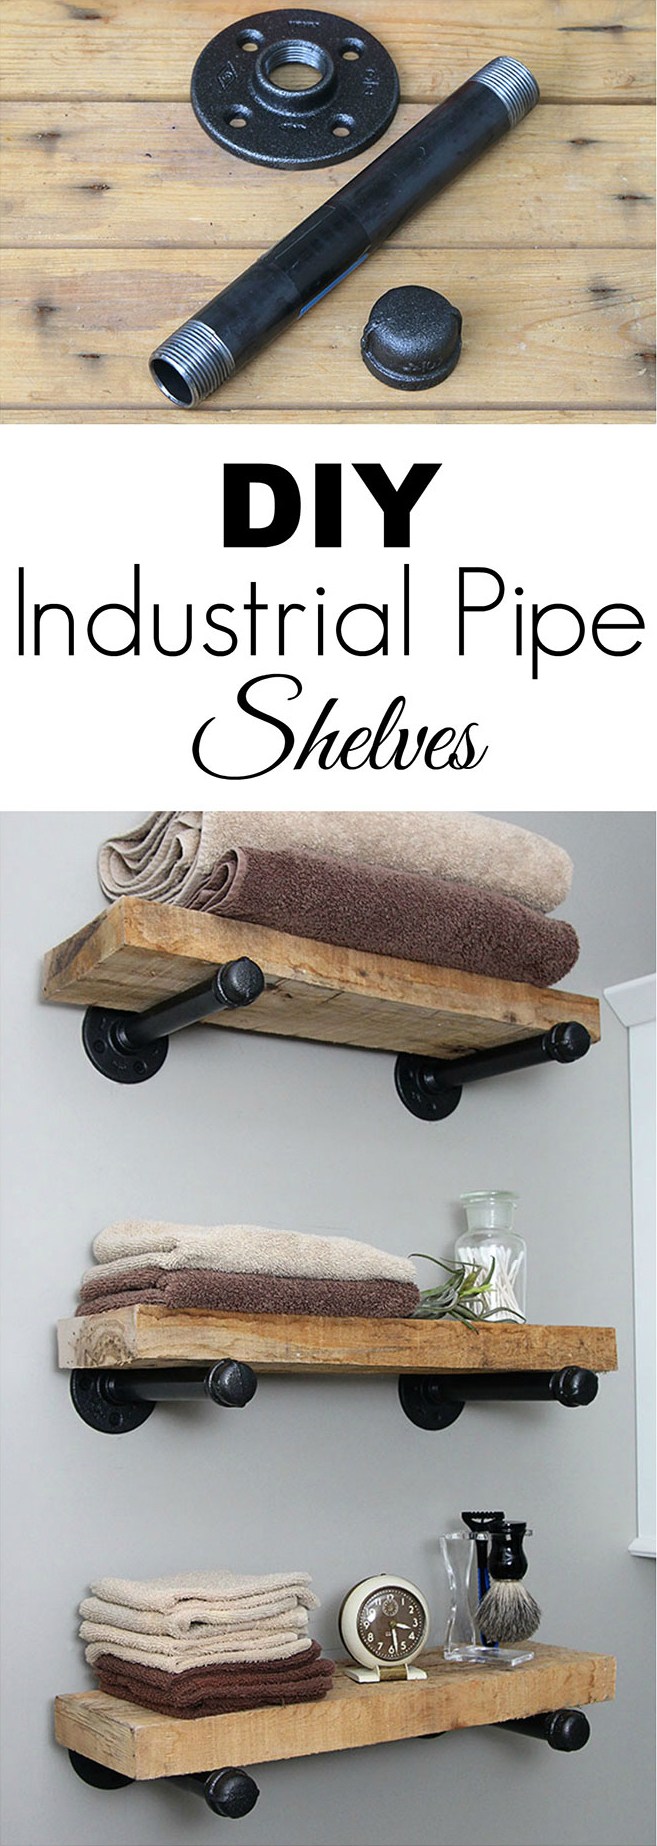 DIY Industrial Pipe Shelves